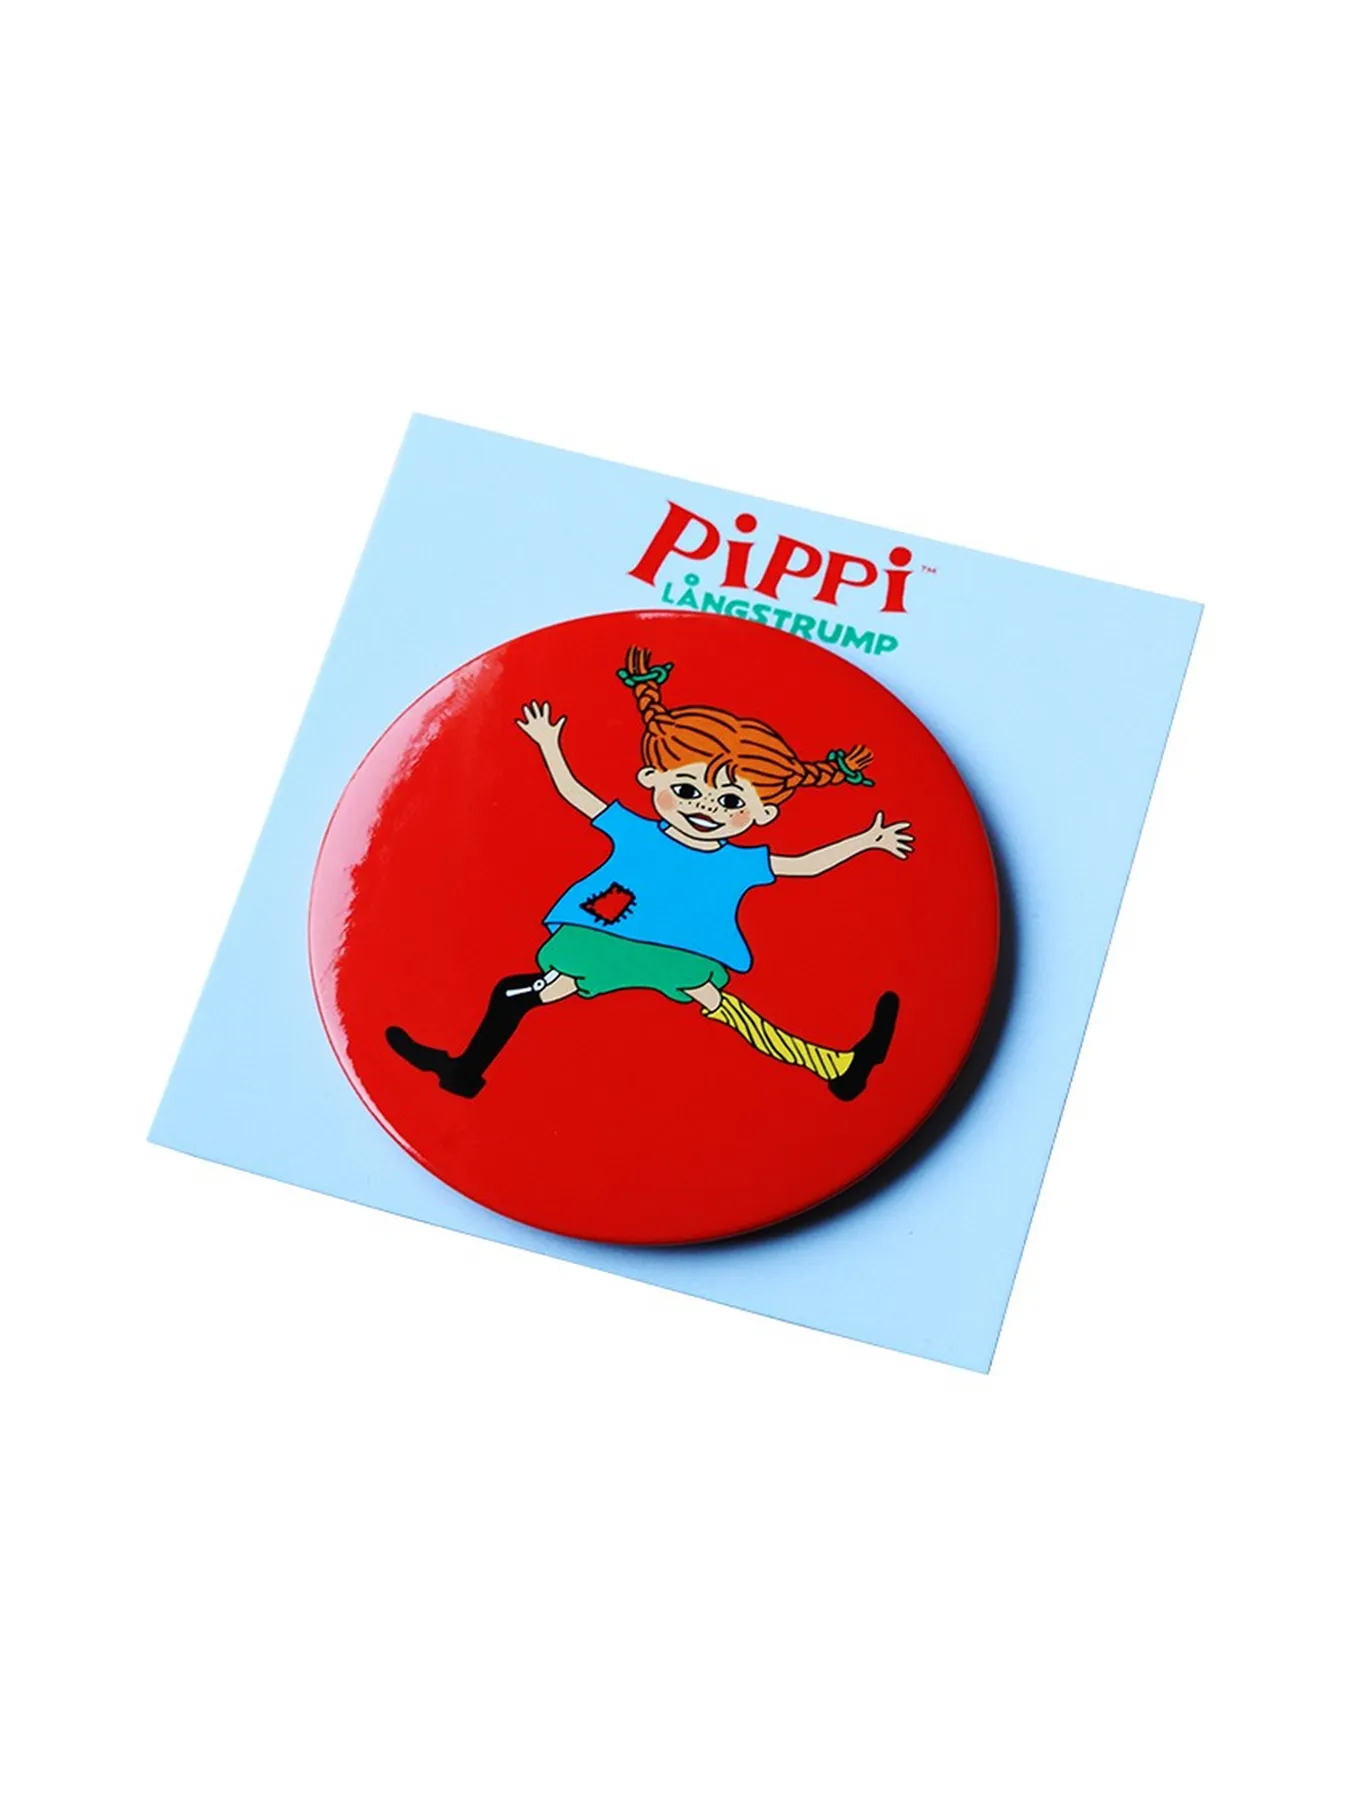 Pocket Mirror Pippi Longstocking Red